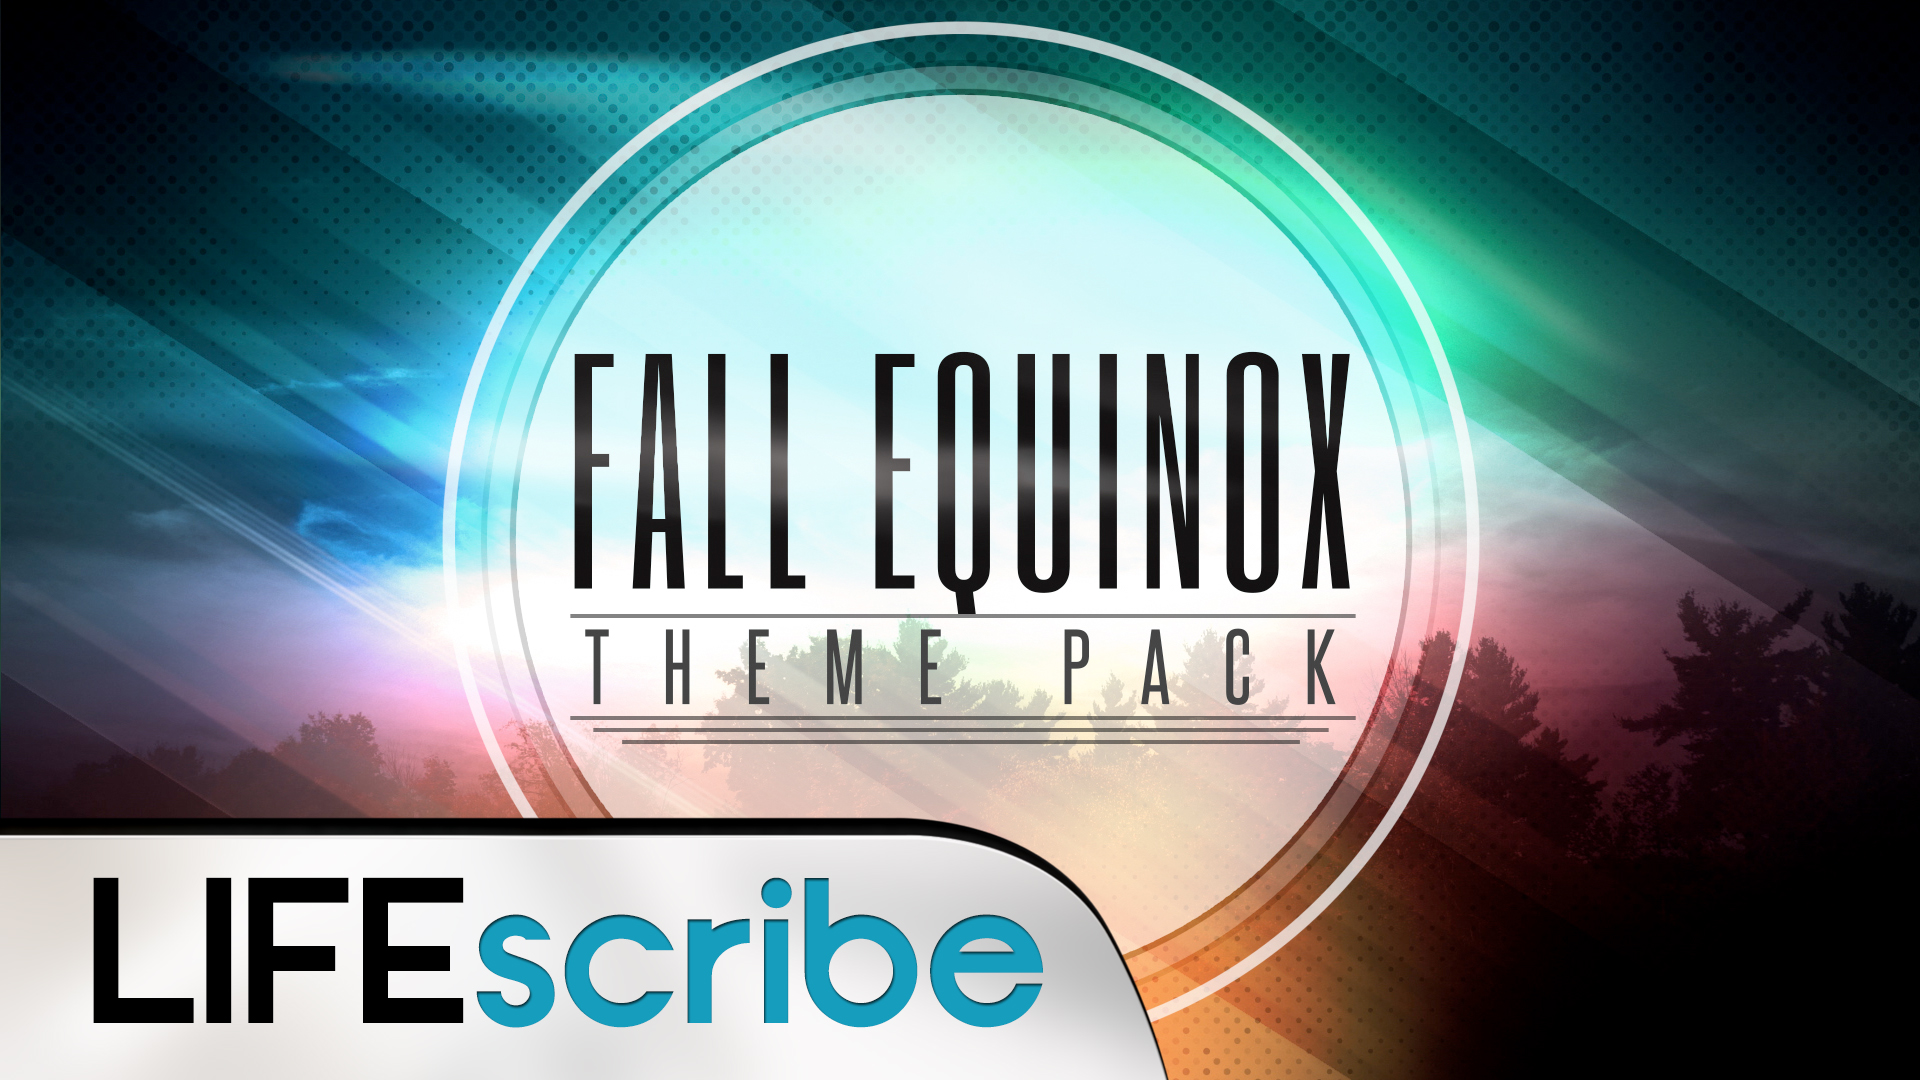 Fall Equinox ThemePack